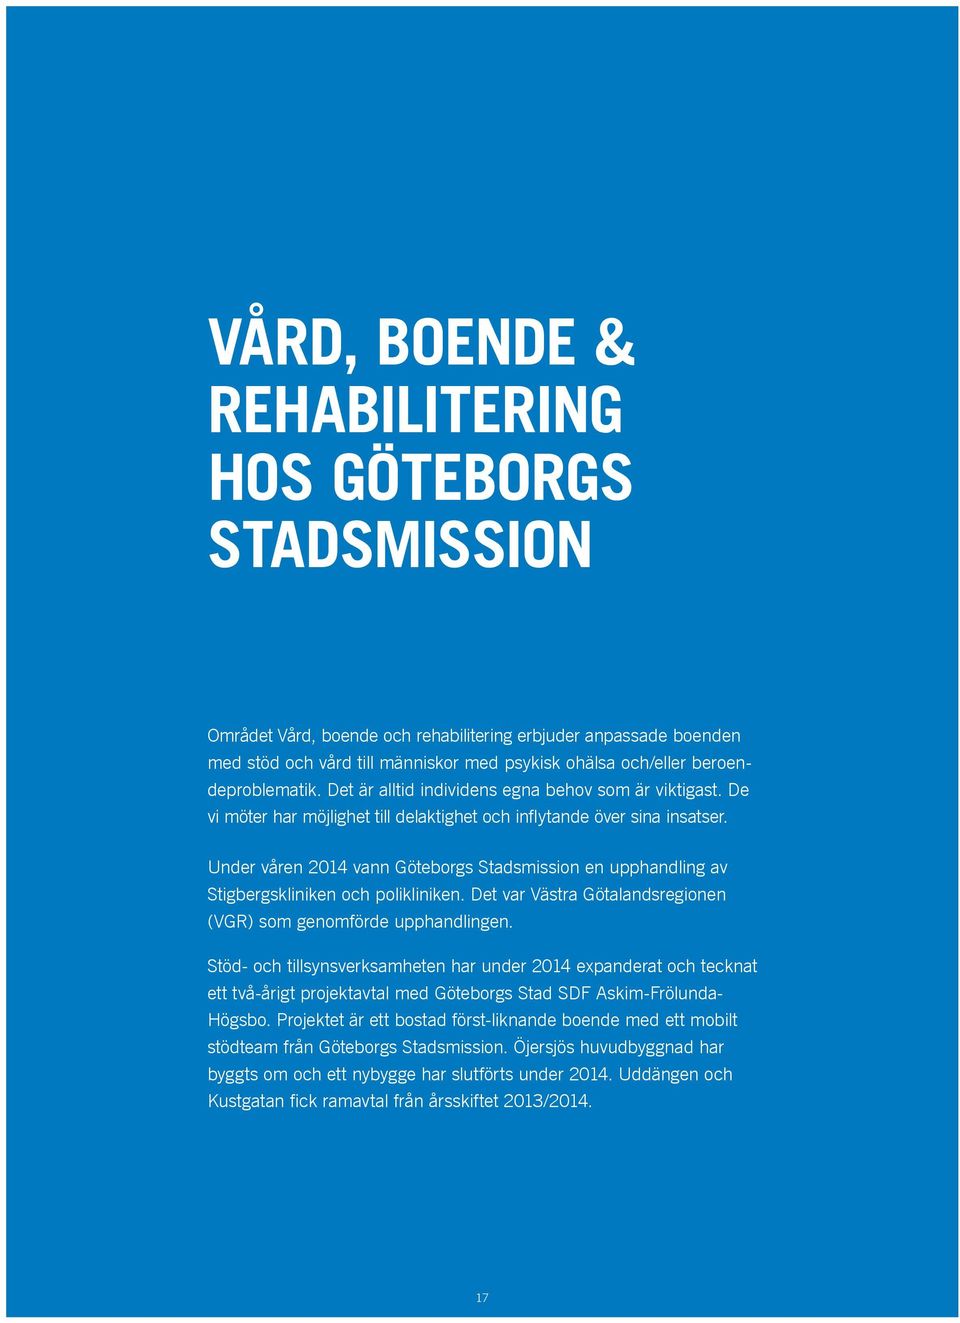 Under våren 2014 vann Göteborgs Stadsmission en upphandling av Stigbergskliniken och polikliniken. Det var Västra Götalandsregionen (VGR) som genomförde upphandlingen.